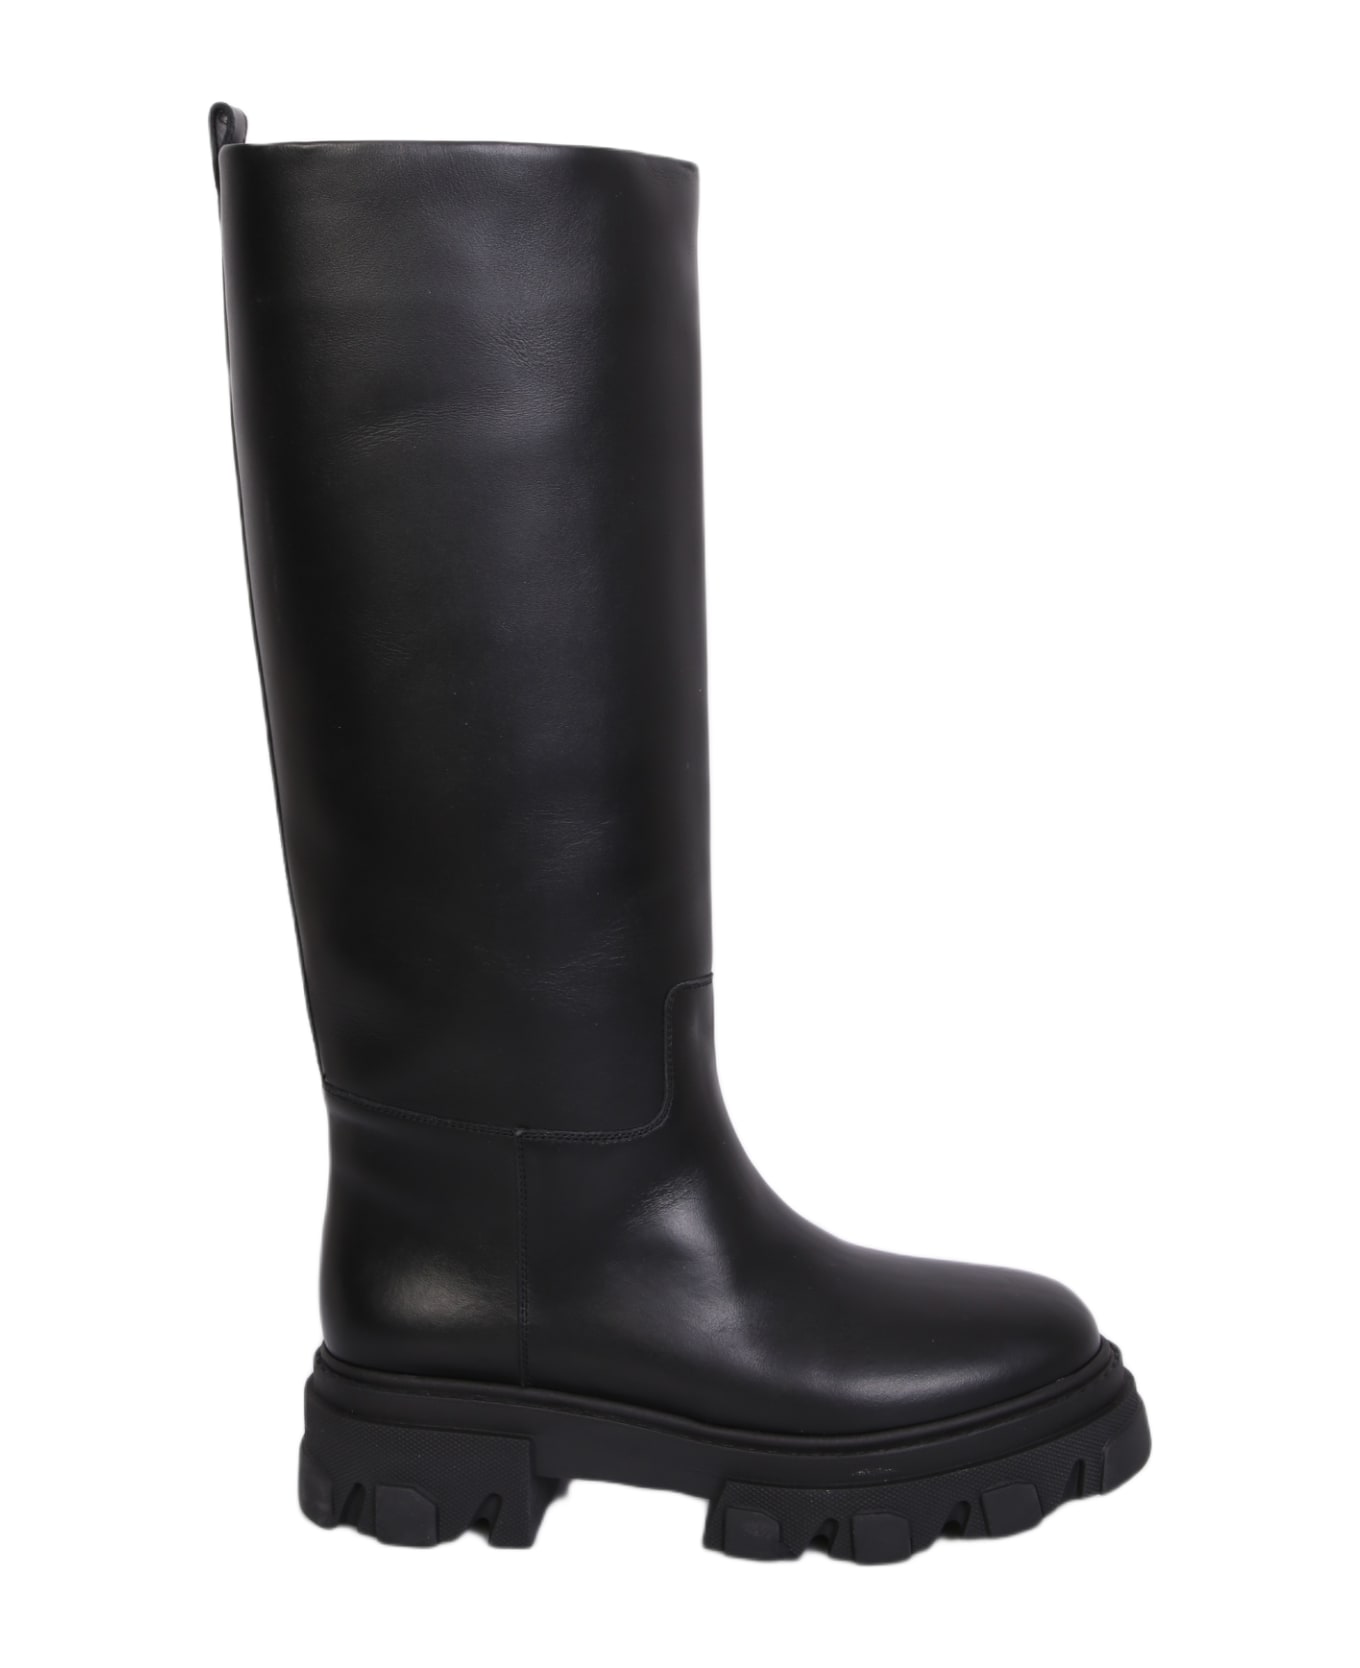 GIA BORGHINI Rubber Tread Sole Perni Boots - Black ブーツ